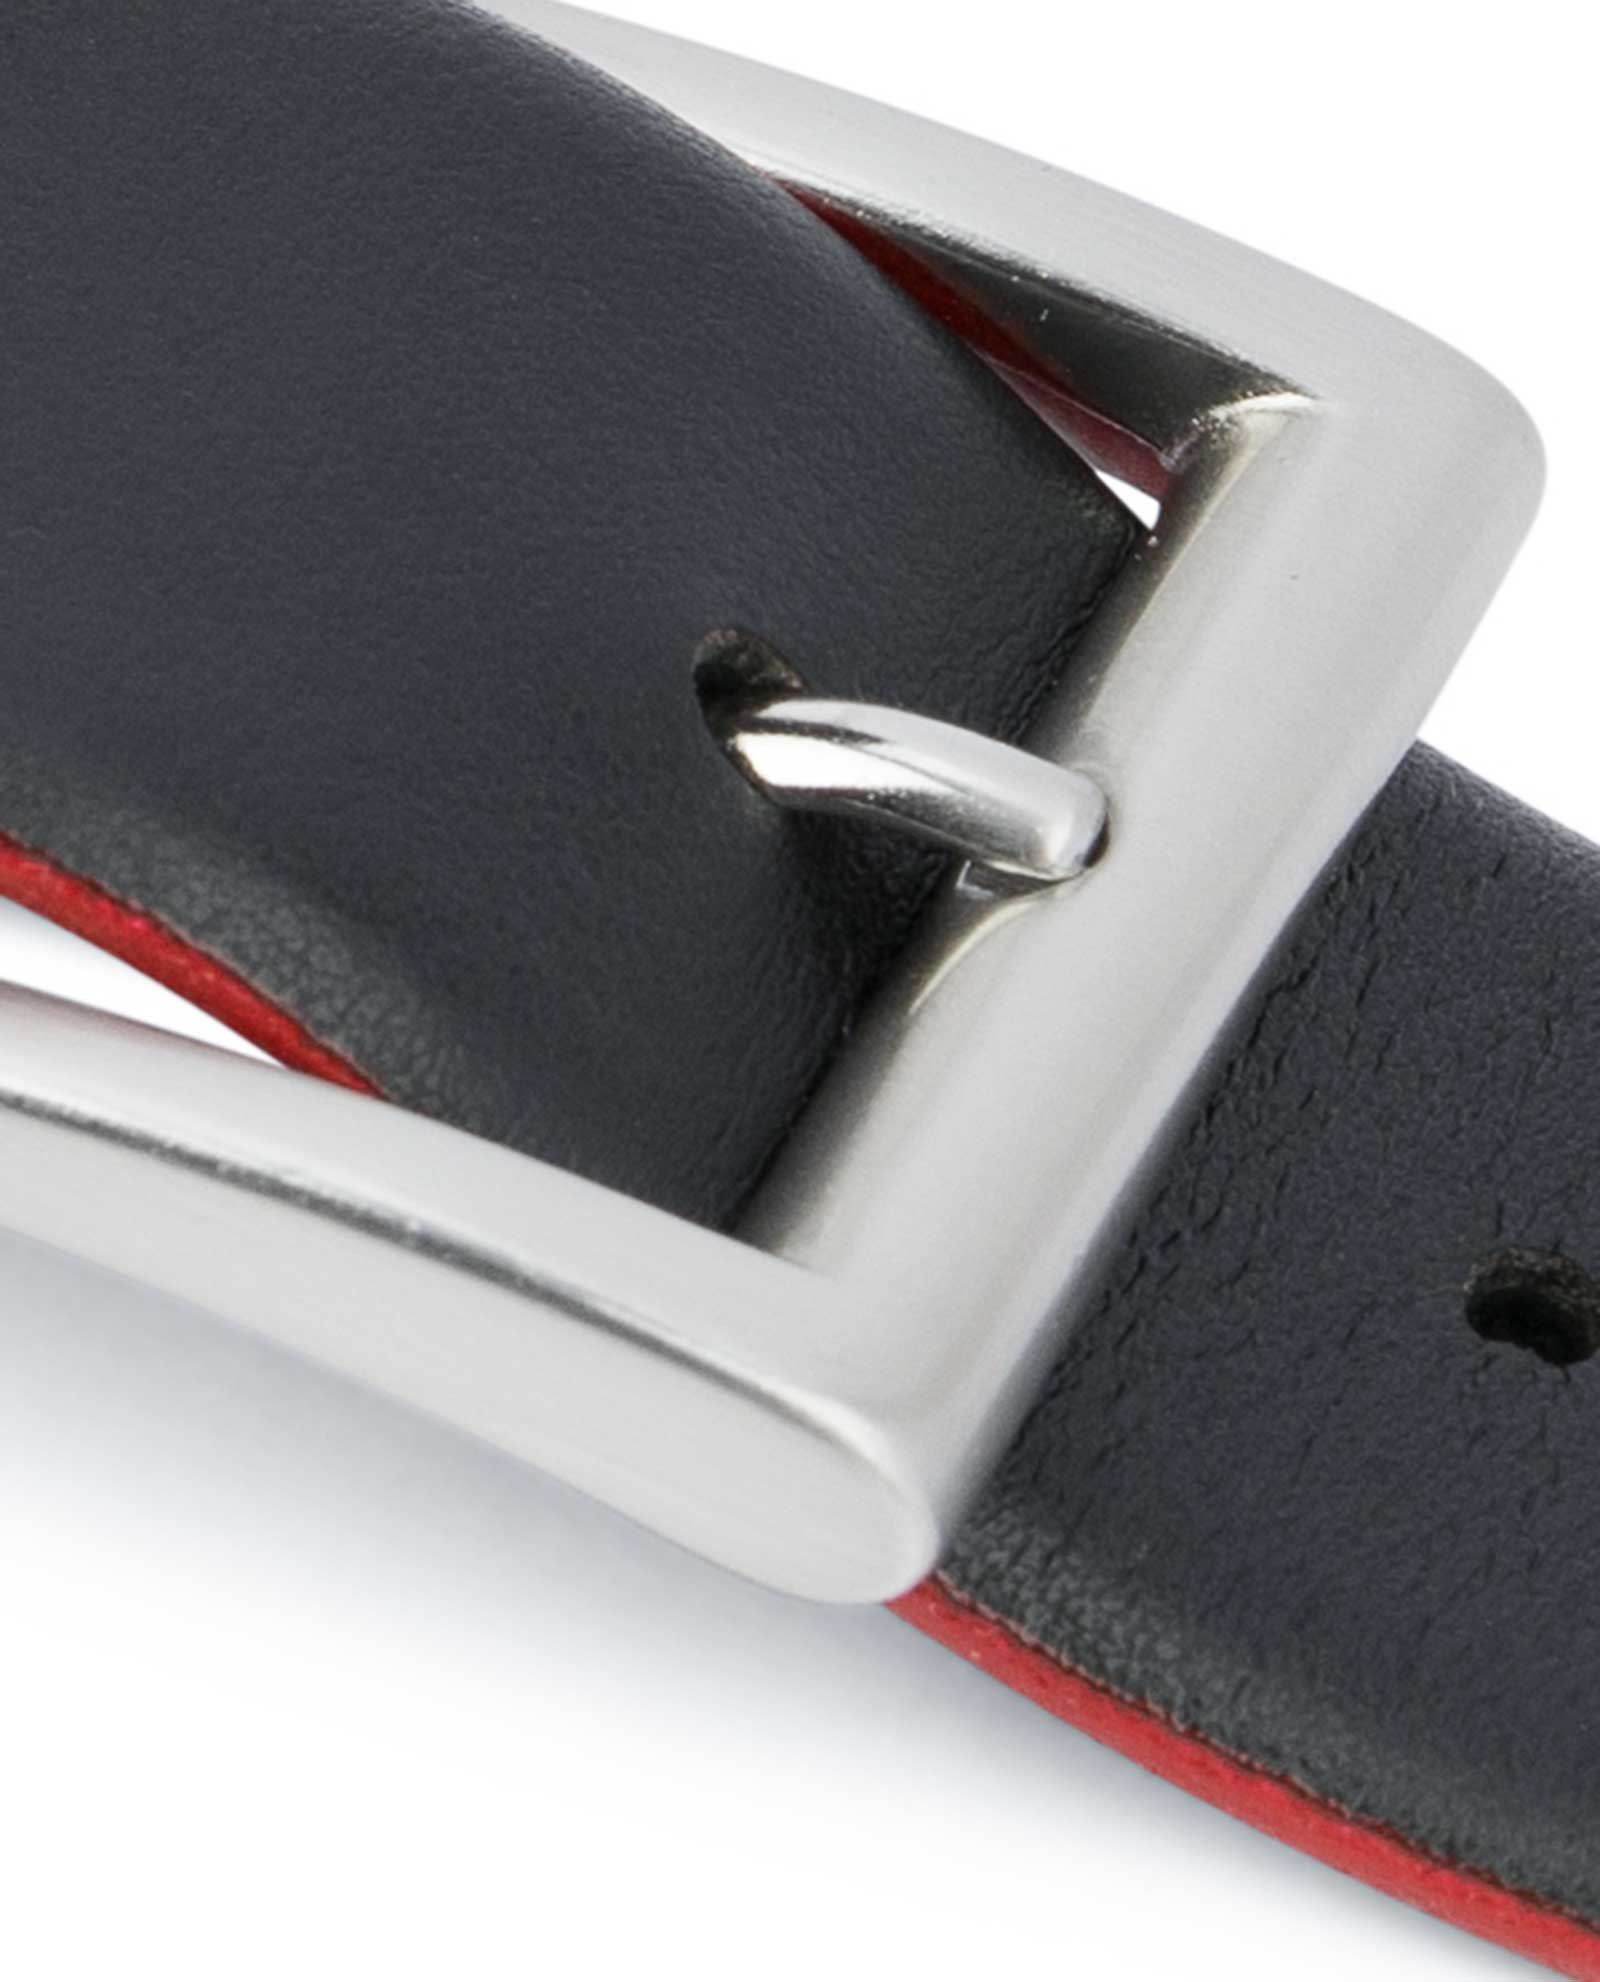 Men's Designer Belts, Leather Belts